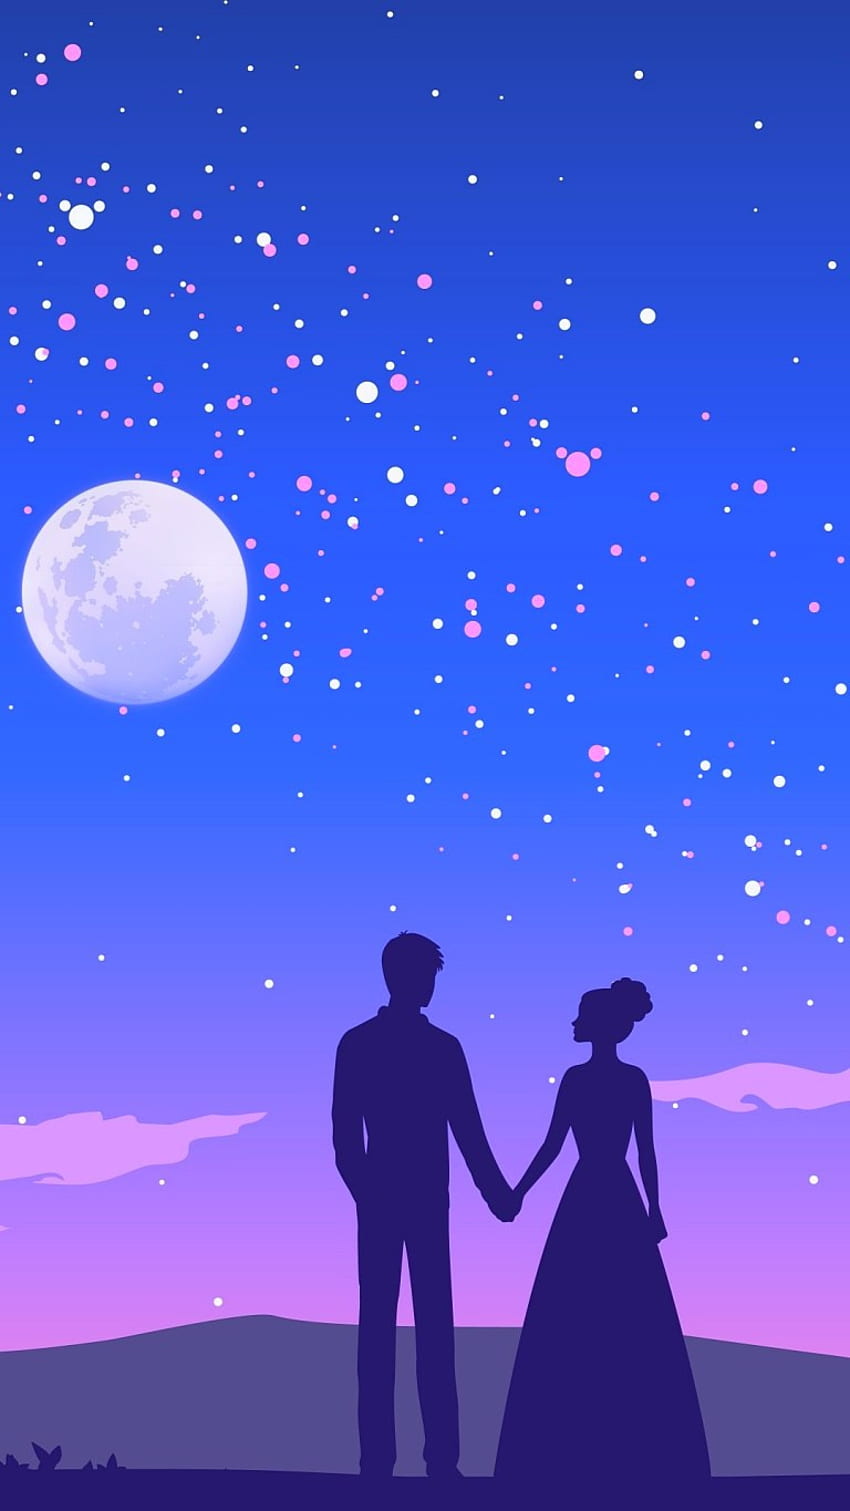 Pasangan Berpegangan Tangan di Moon Light Romantic, Moon Romance wallpaper ponsel HD